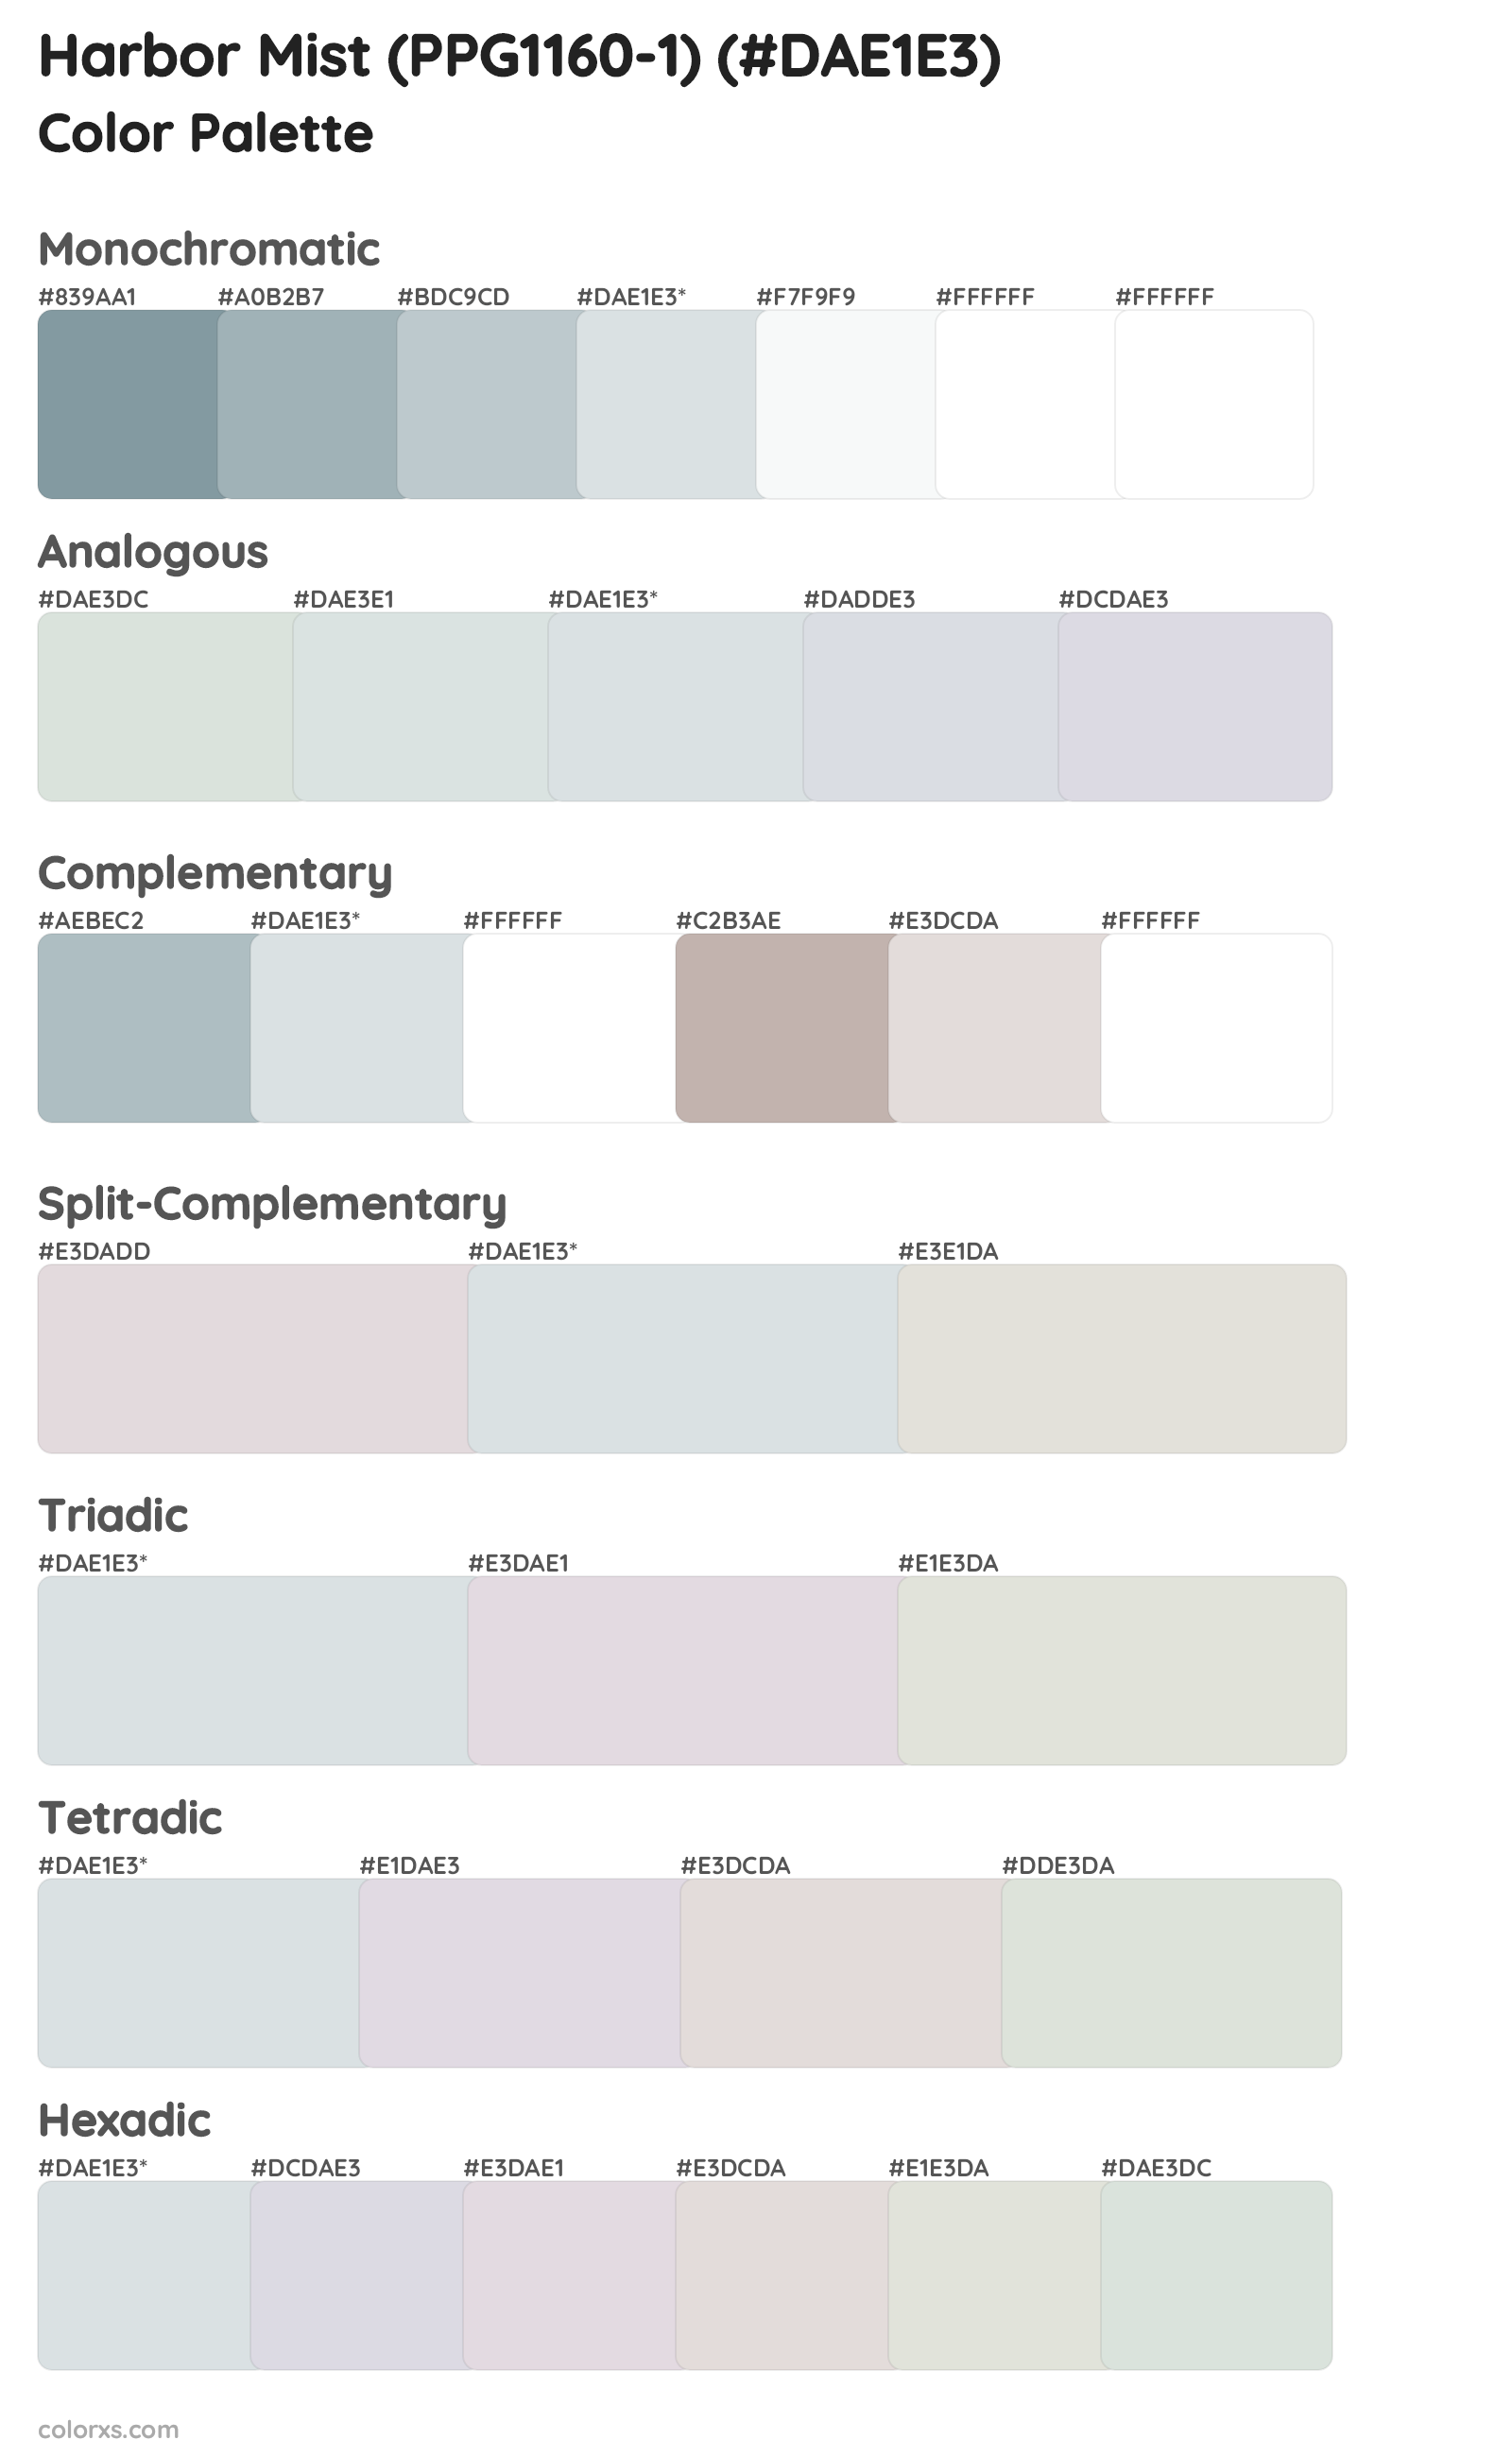 Harbor Mist (PPG1160-1) Color Scheme Palettes